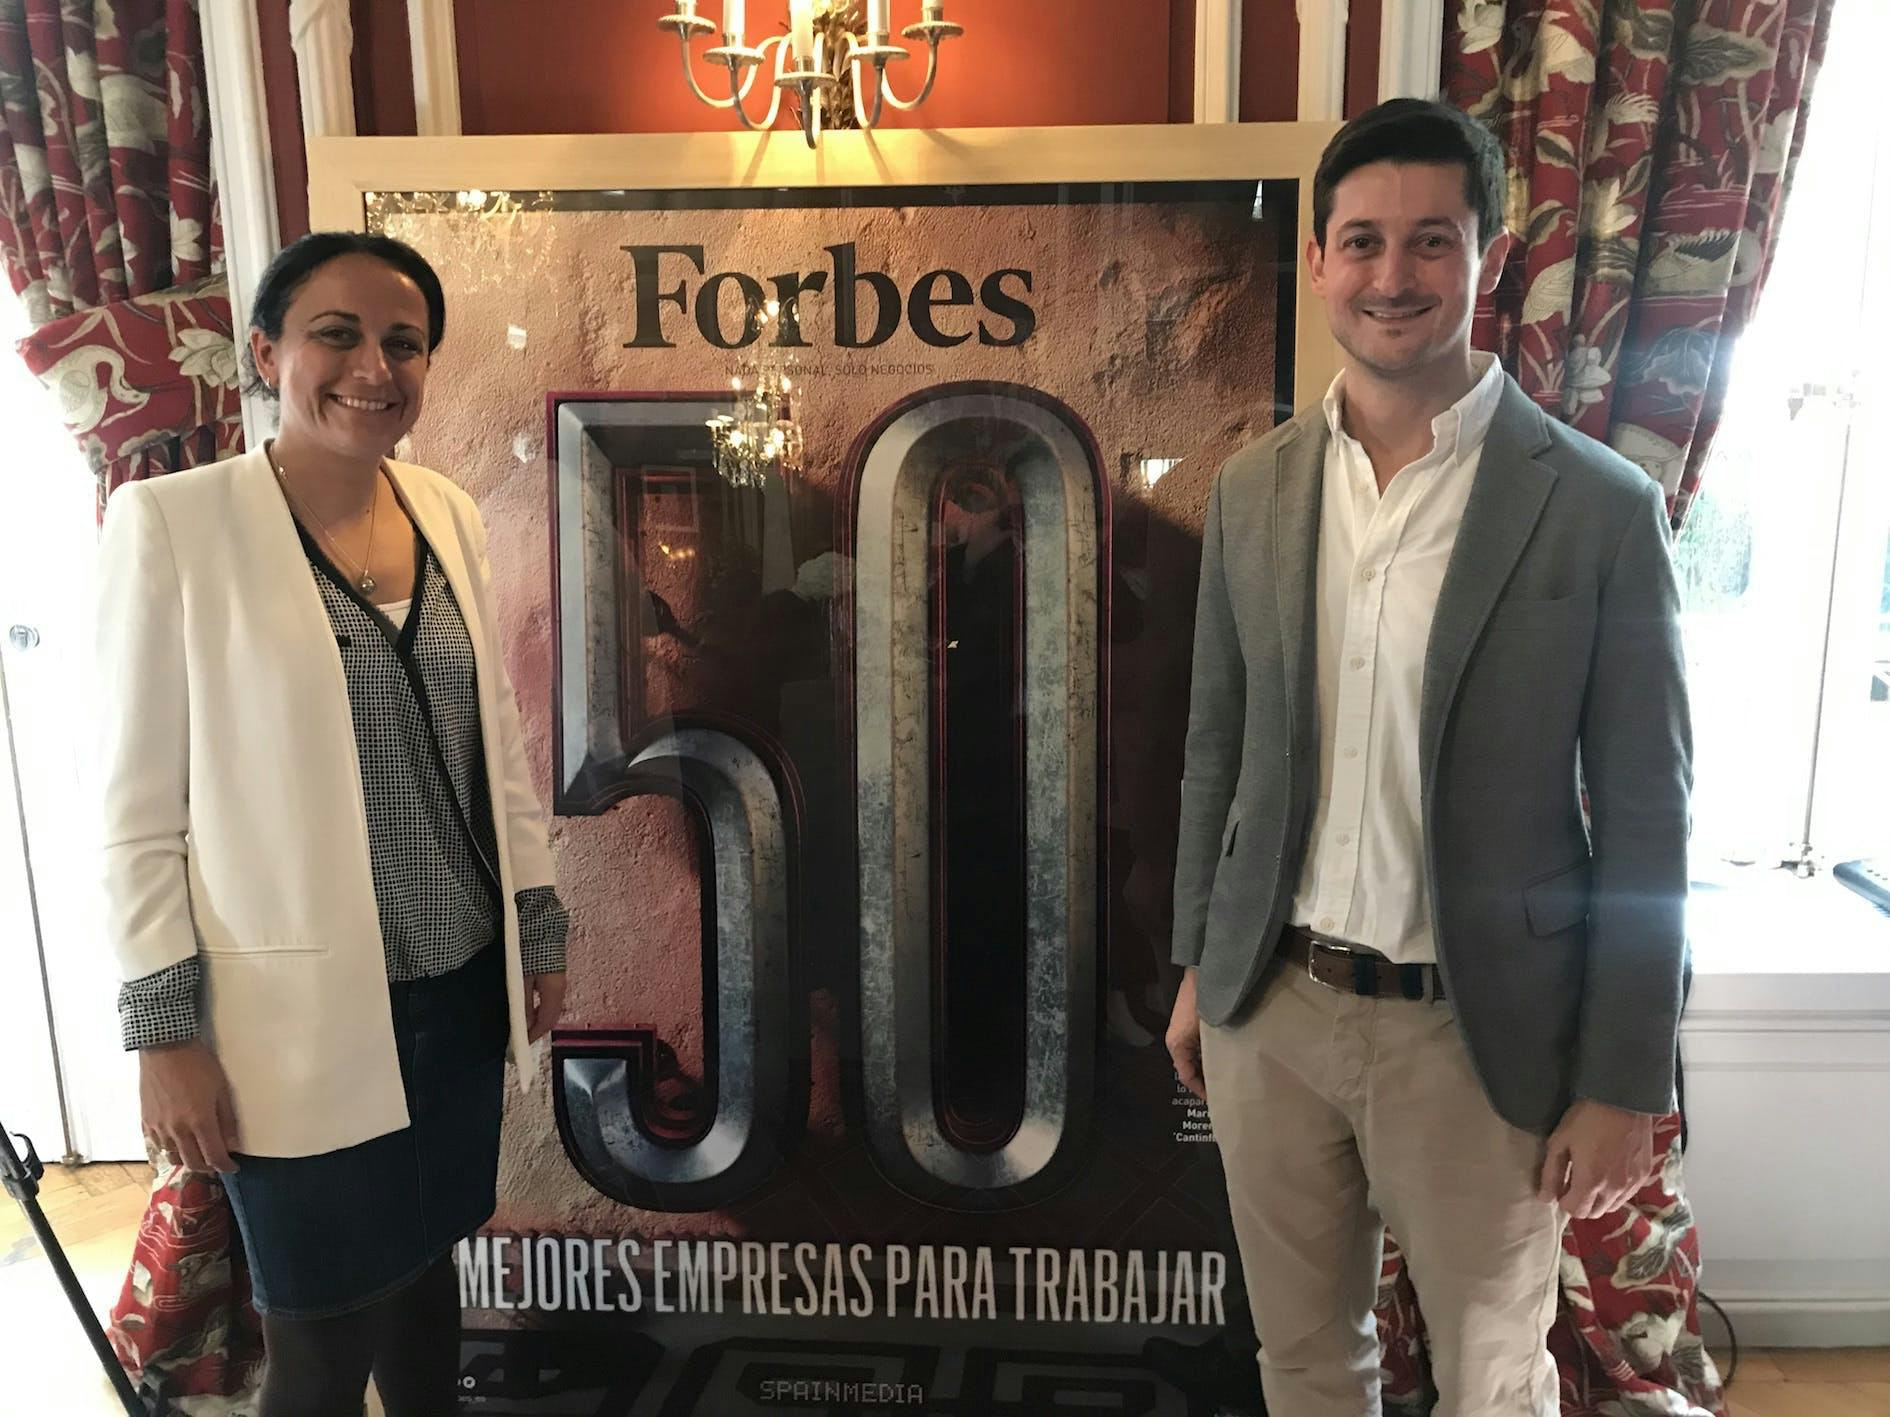 Imagem número 32 da actual secção de Forbes coloca o Grupo Cosentino como umas das “50 melhores empresas para trabalhar” da Cosentino Portugal